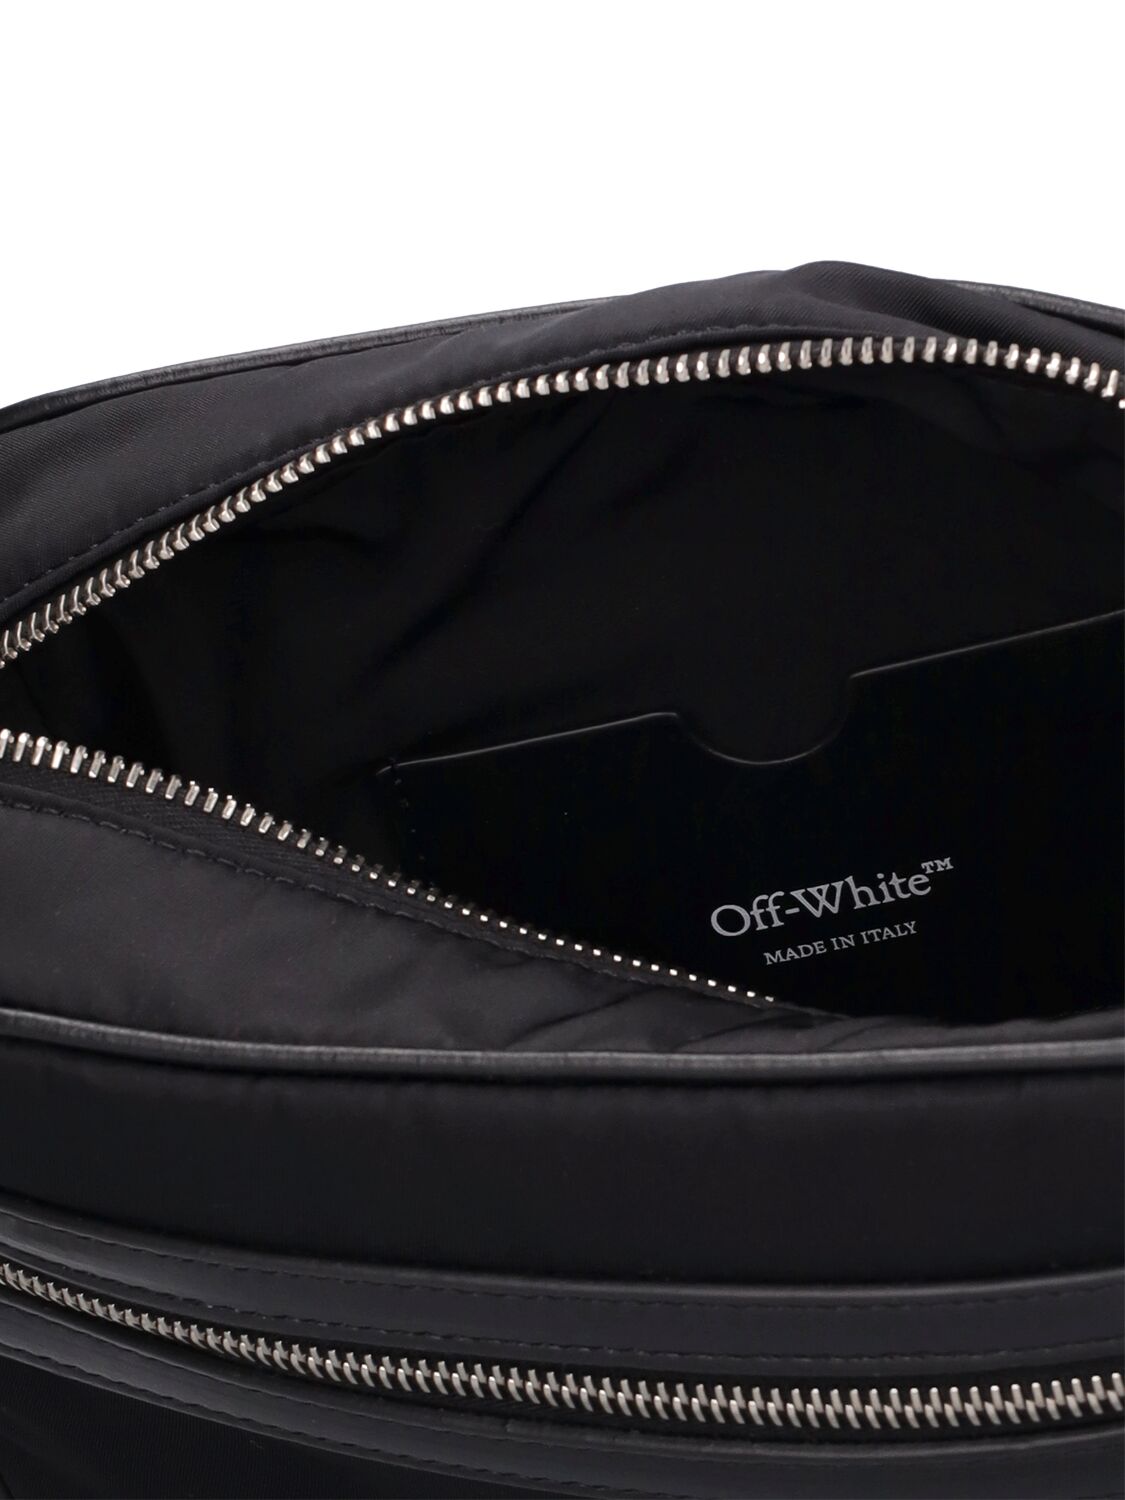 Shop Off-white Core Camera Nylon Bag In Black